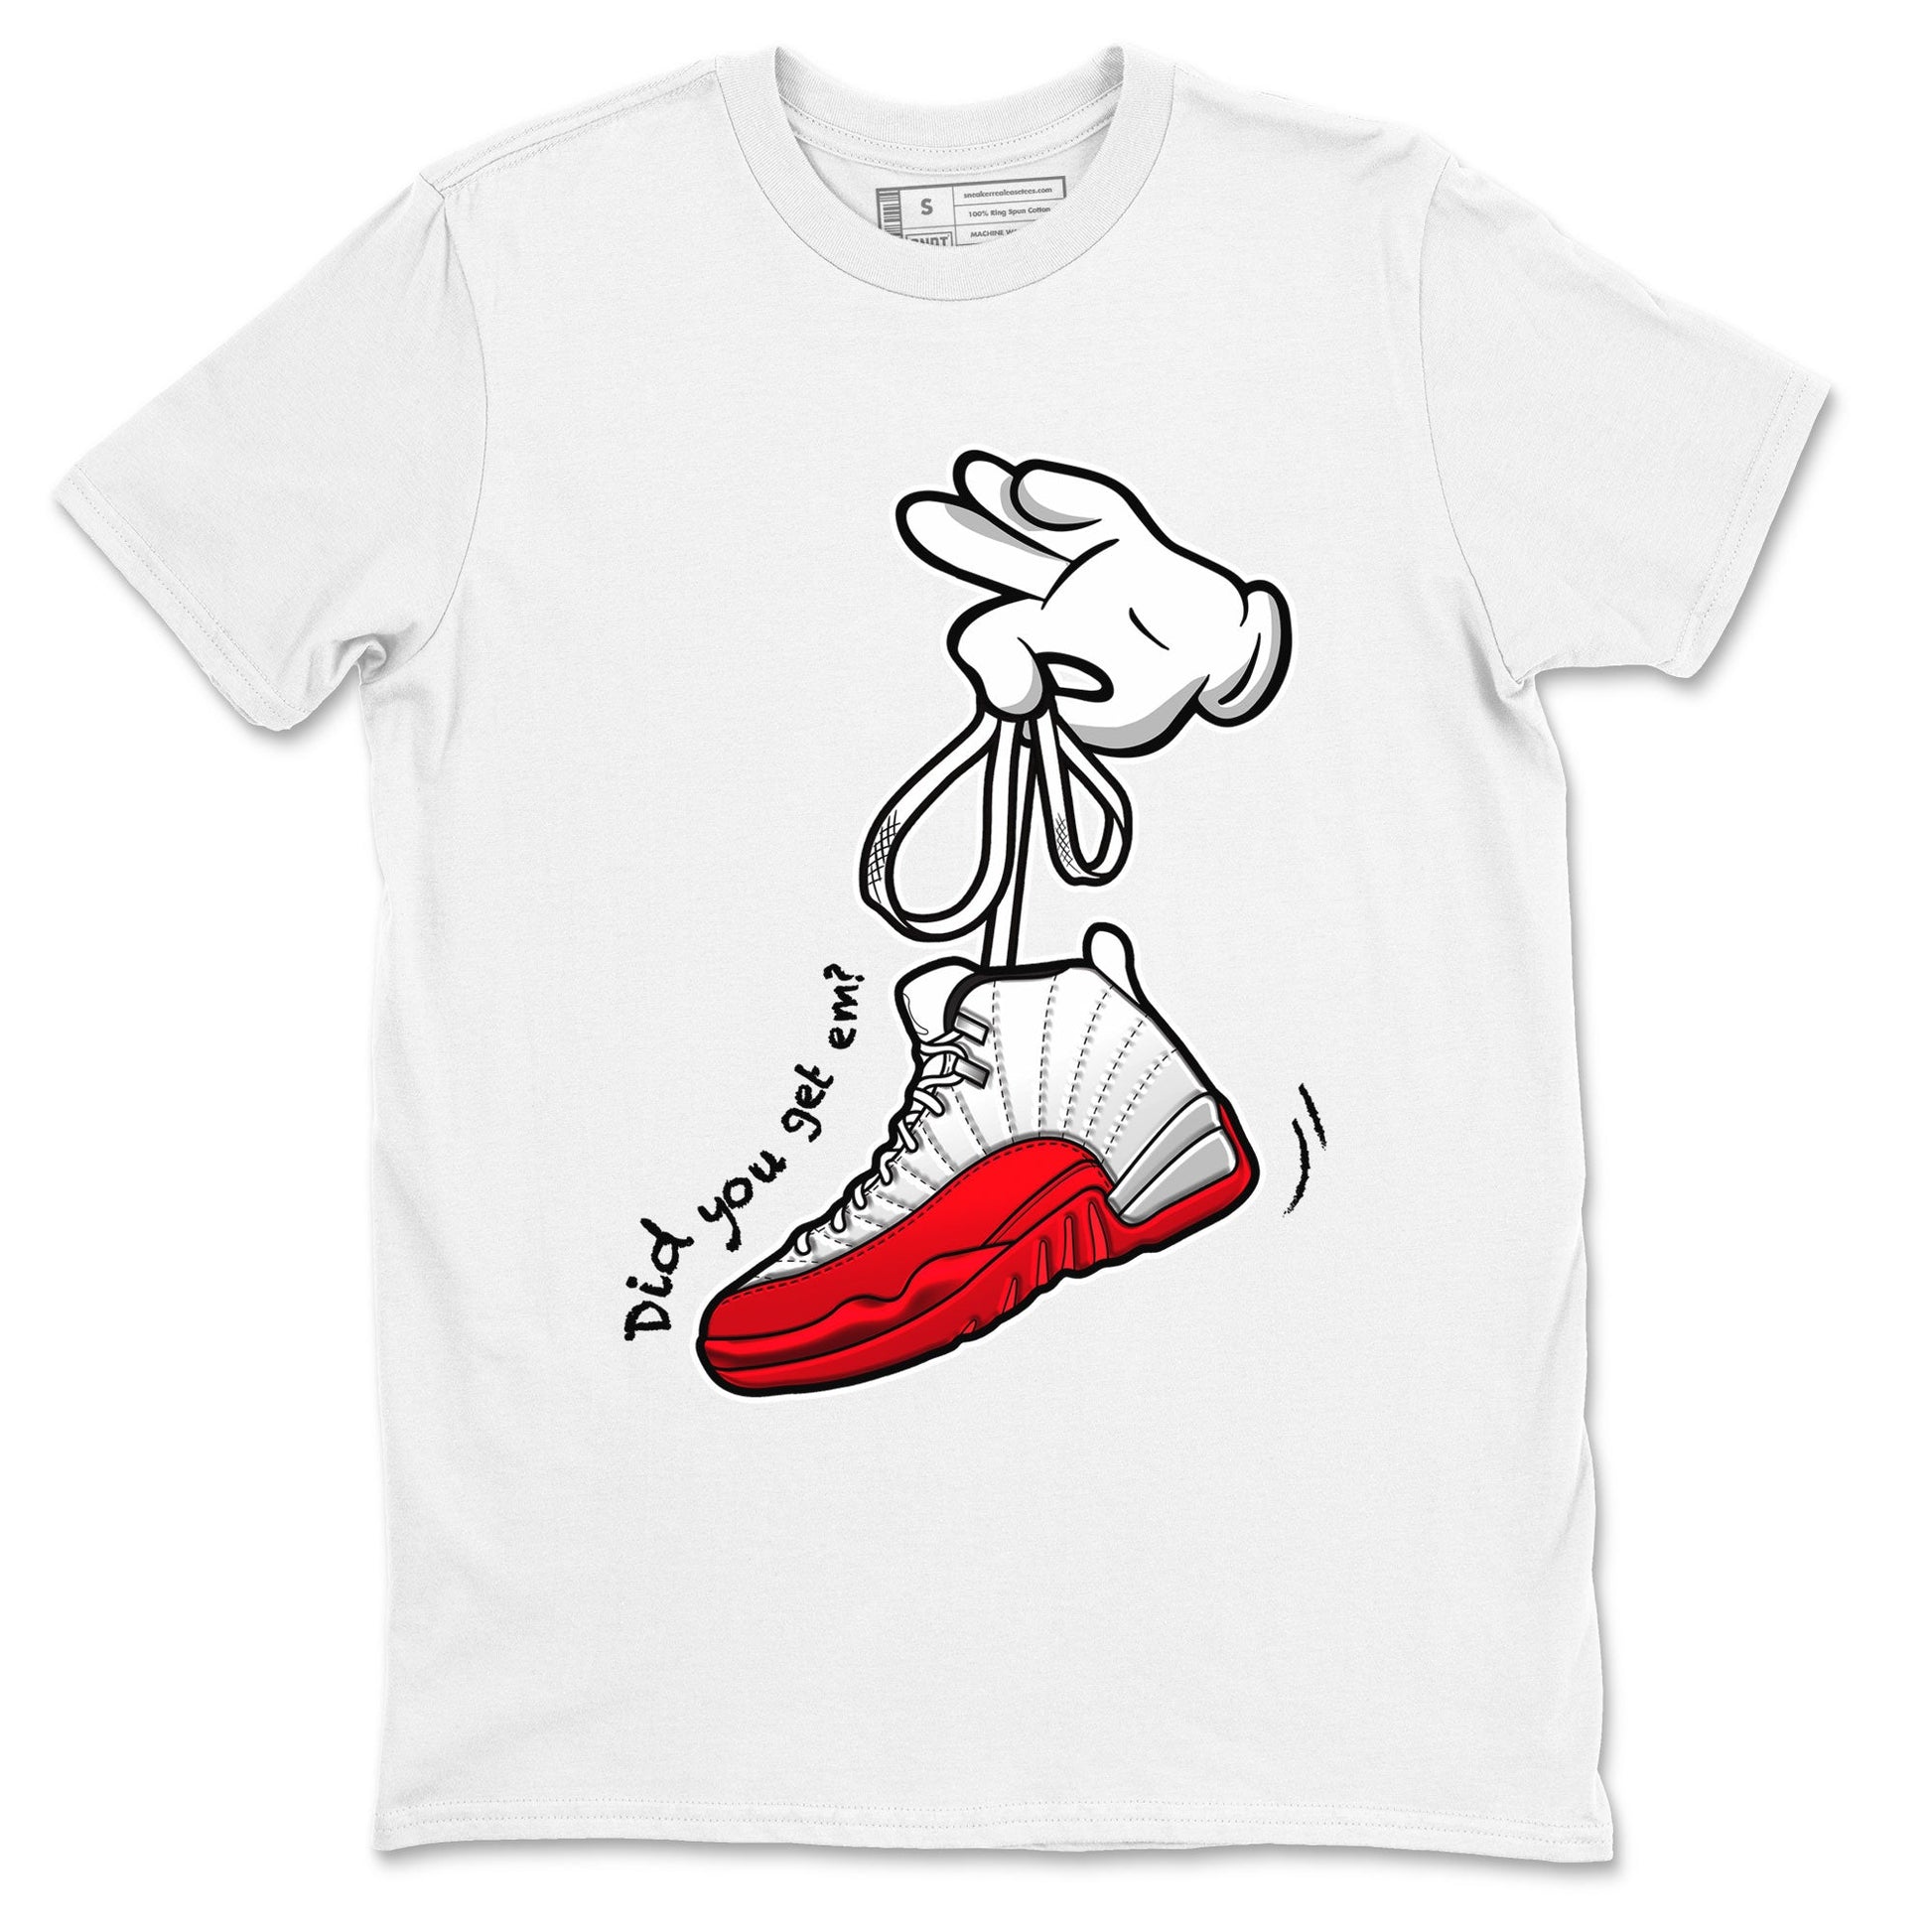 Air Jordan 12 Cherry shirt to match jordans Cartoon Hands sneaker tees AJ12 Cherry SNRT Sneaker Release Tees Cotton Sneaker Tee White 2 T-Shirt